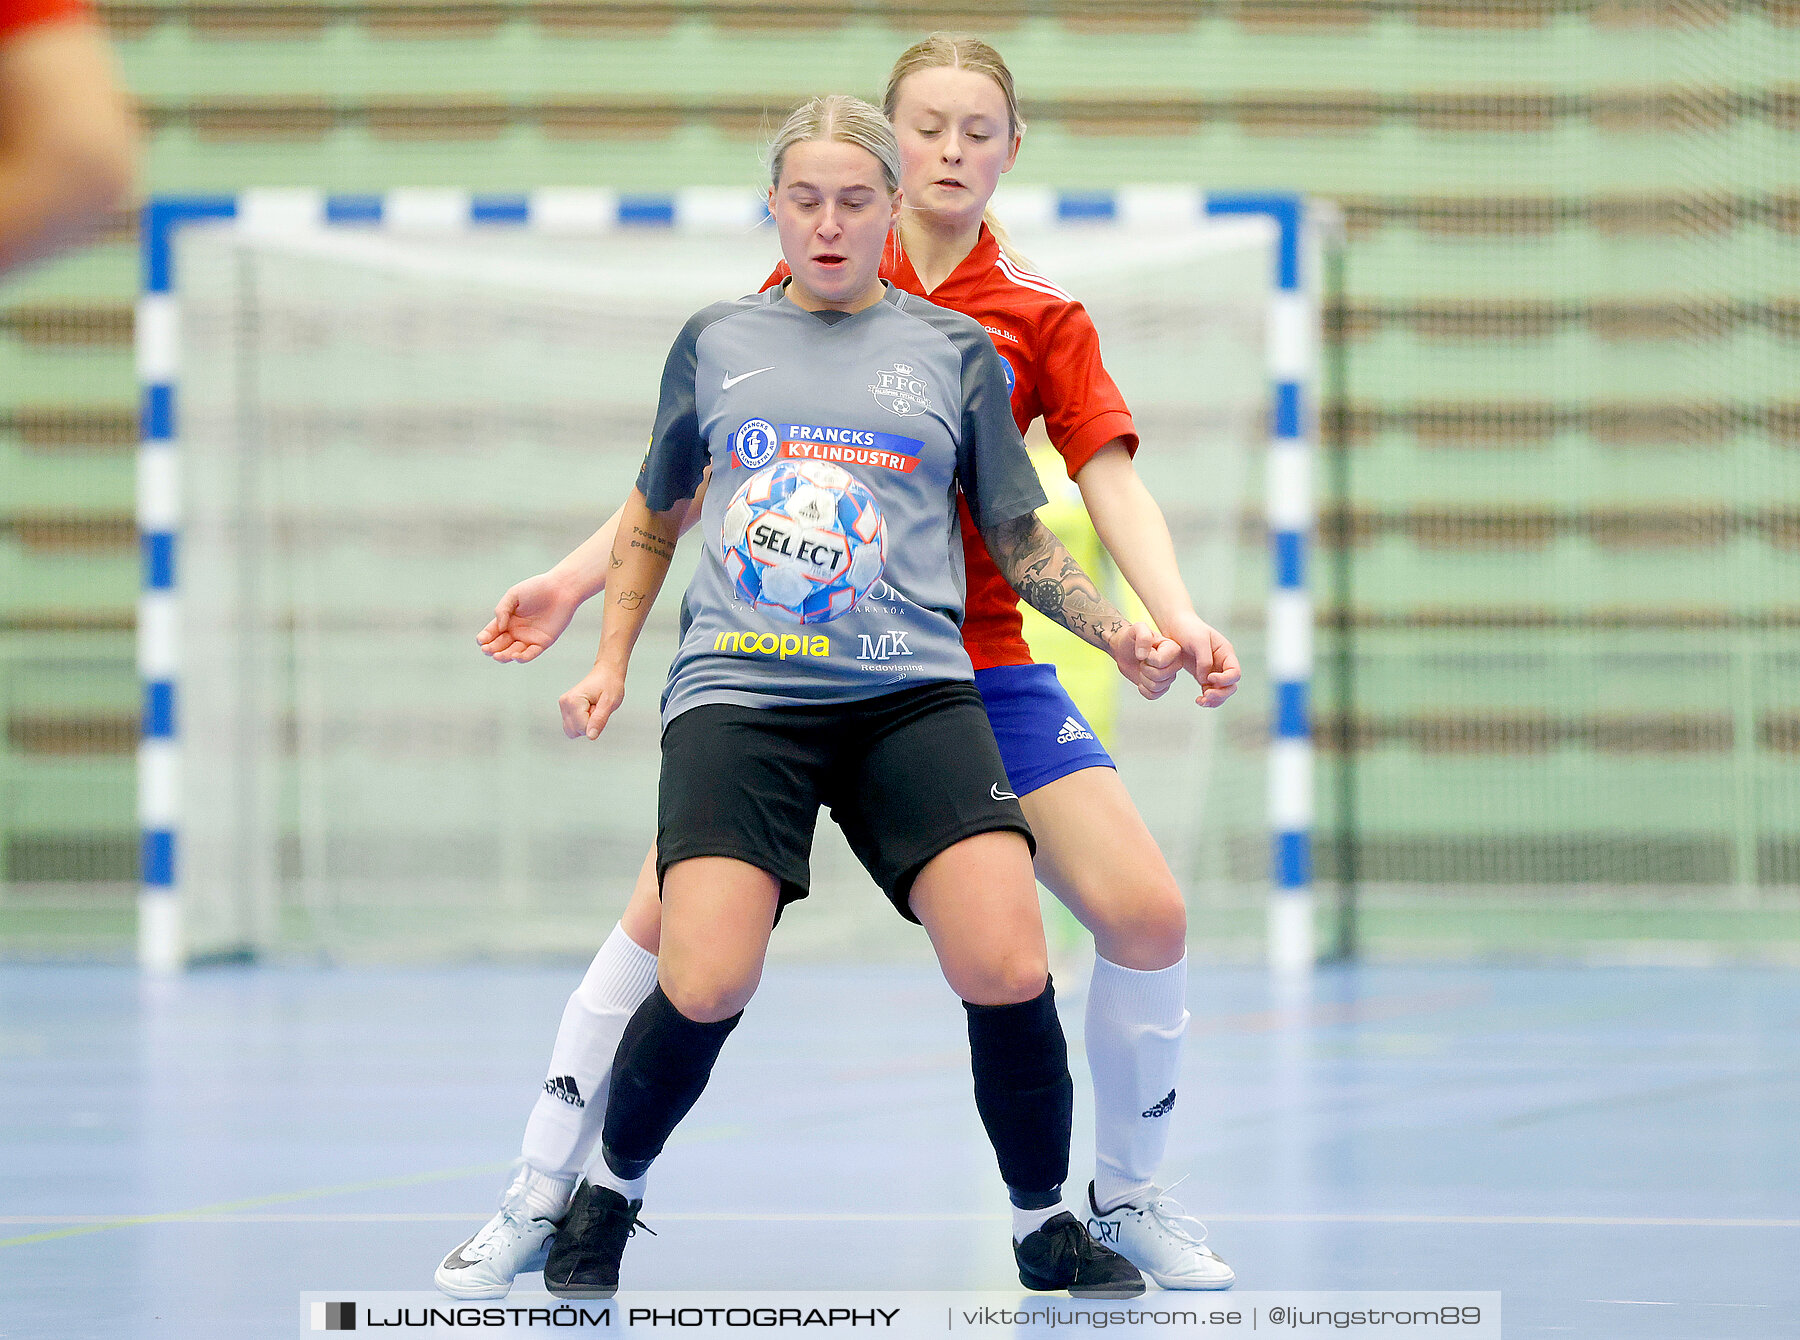 Skövde Futsalcup 2022 Damer Falköping Futsal Club-IFK Wreta Kloster 2 4-0,dam,Arena Skövde,Skövde,Sverige,Futsal,,2022,297604